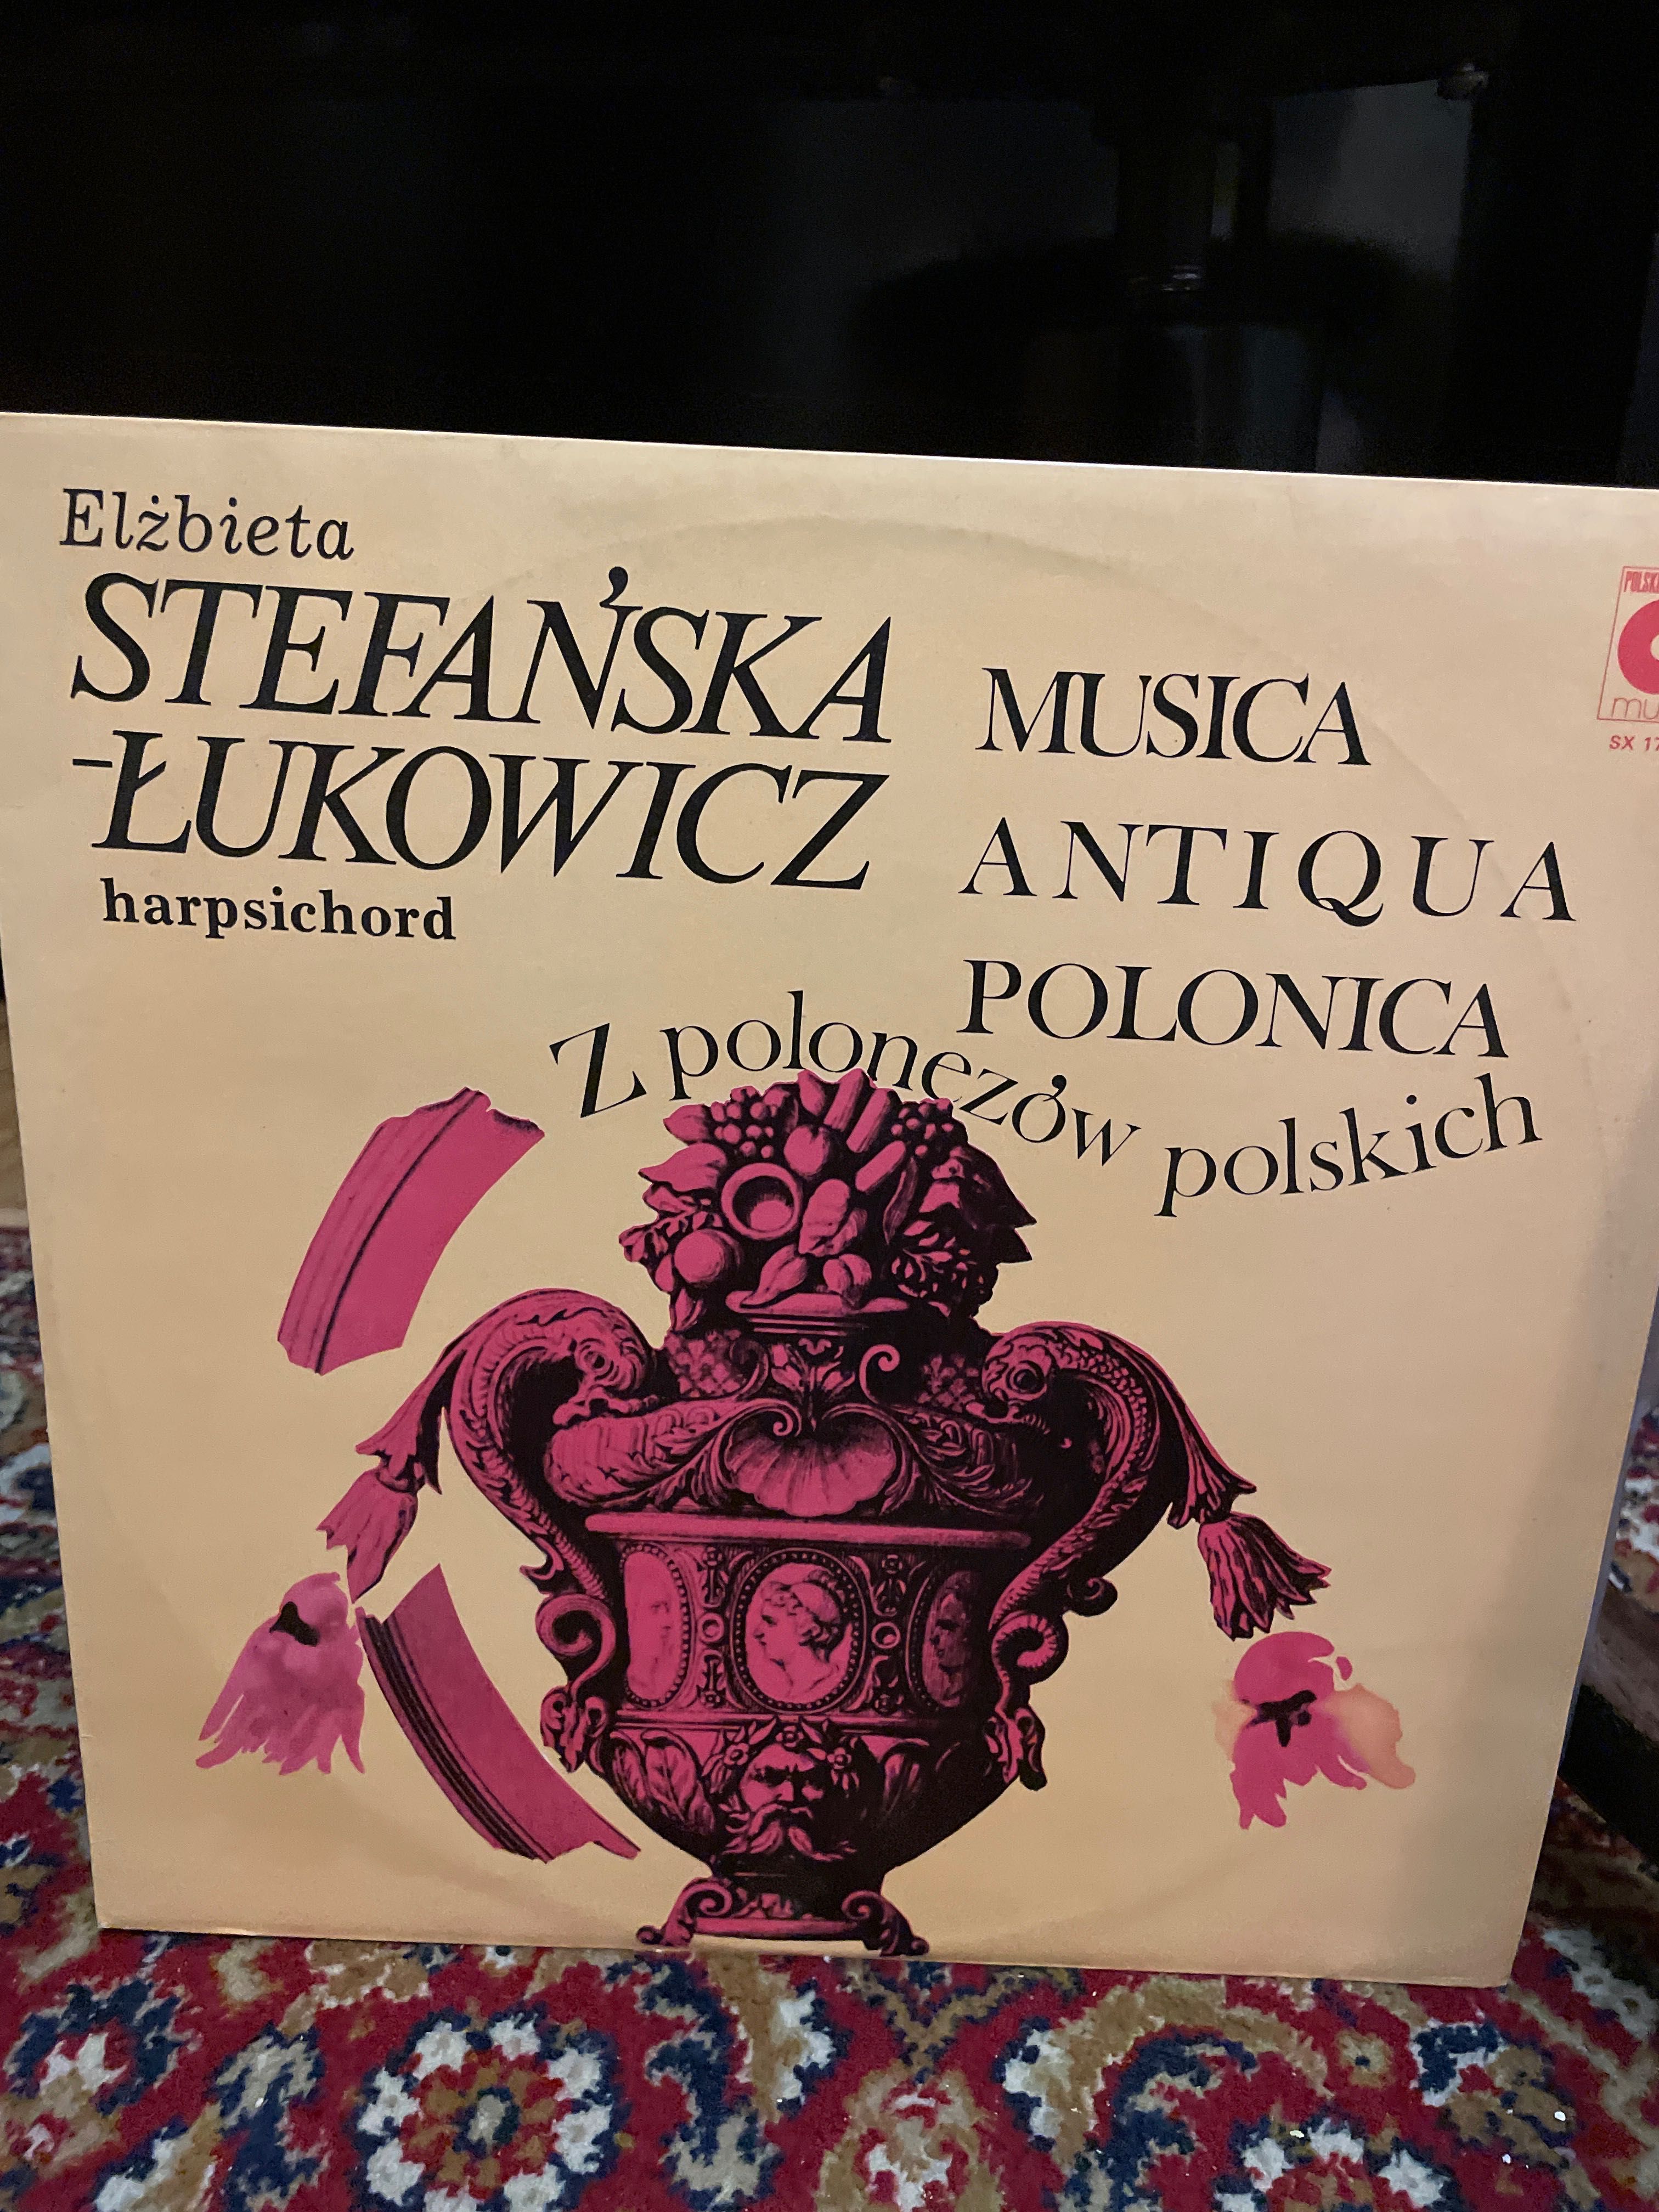 płyta winylowa Elżbieta Stefańska-Łukowicz, “z polonezów polskich”